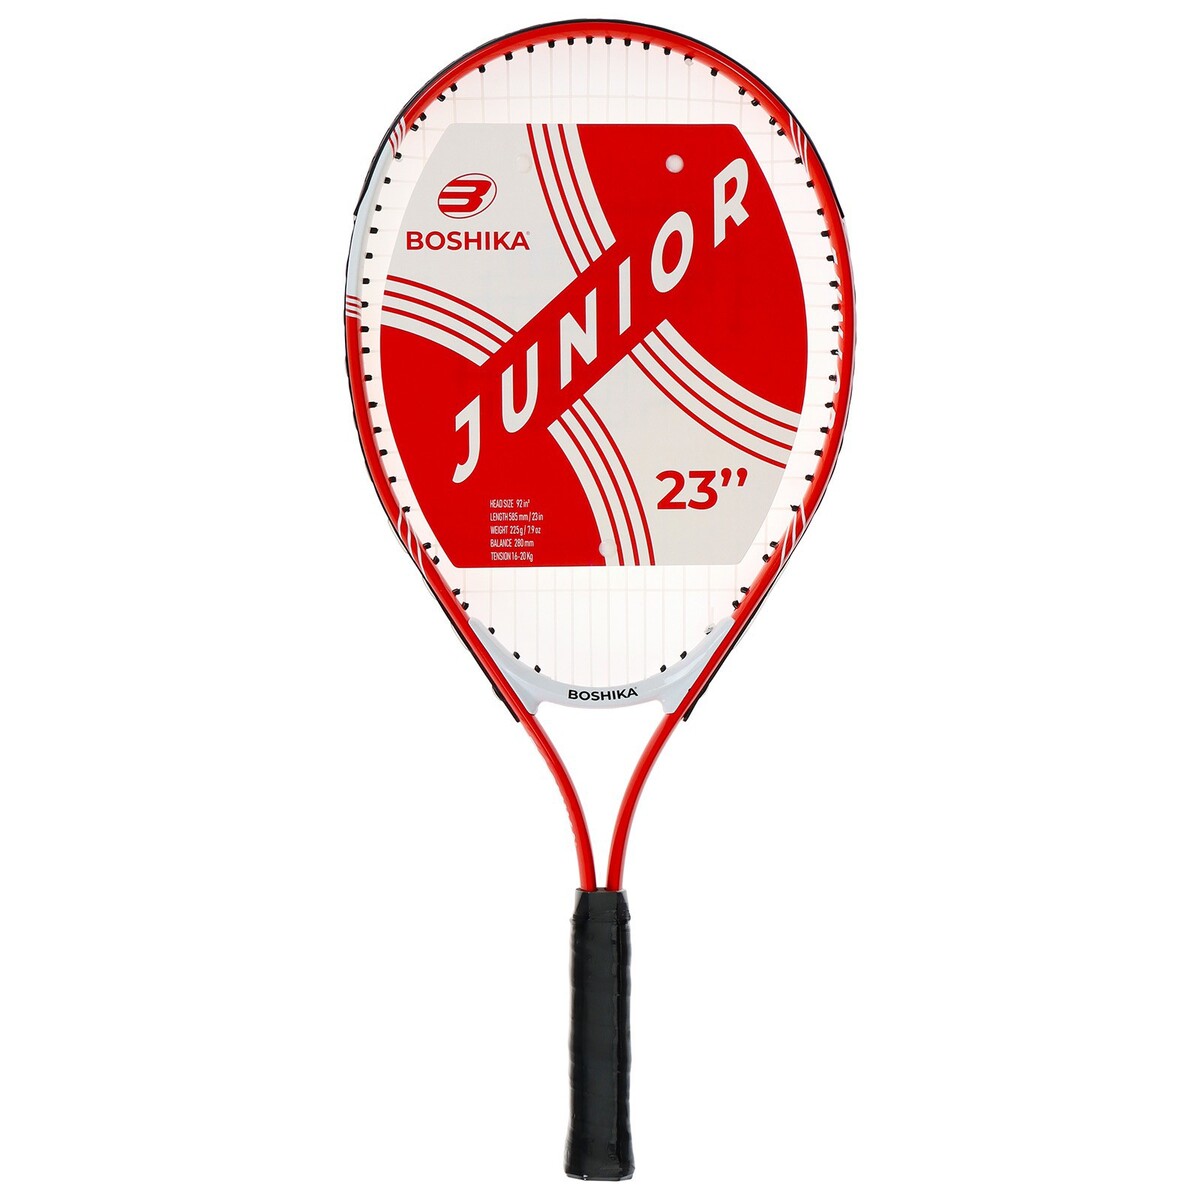 Ракетка для большого тенниса детская boshika junior, алюминий, 23'', цвет красный мячи для большого тенниса sportex 3 штуки в пакете c33248